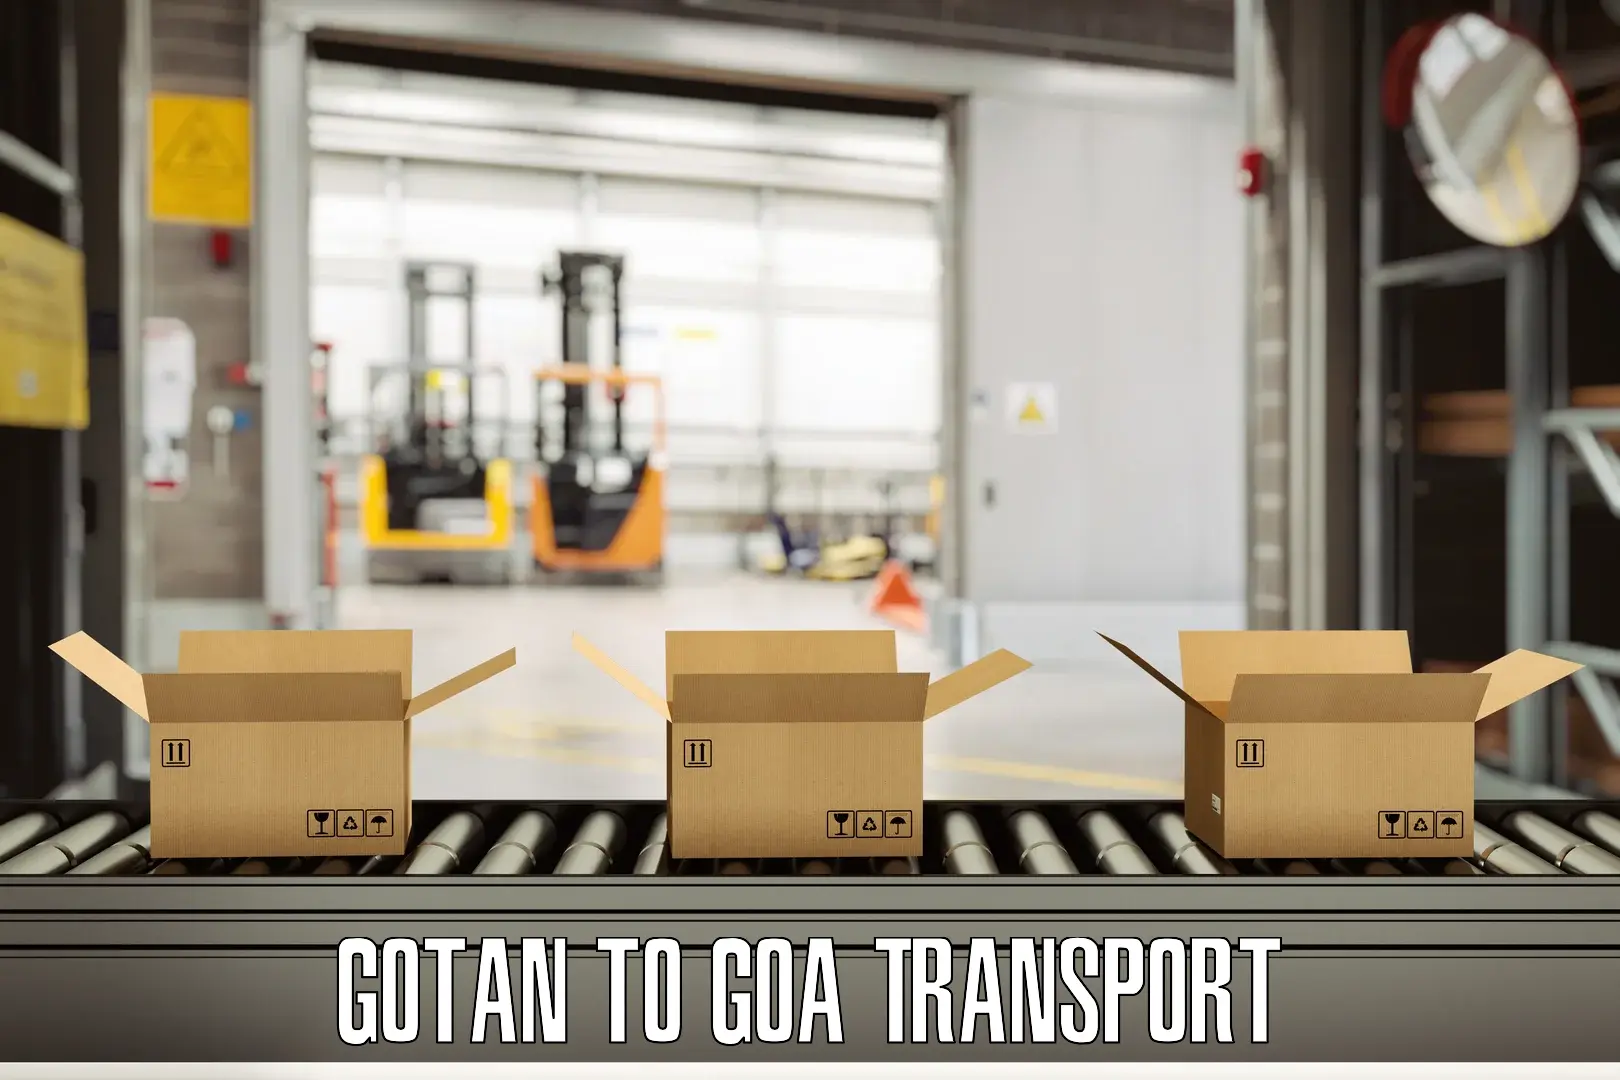 Container transportation services Gotan to Vasco da Gama